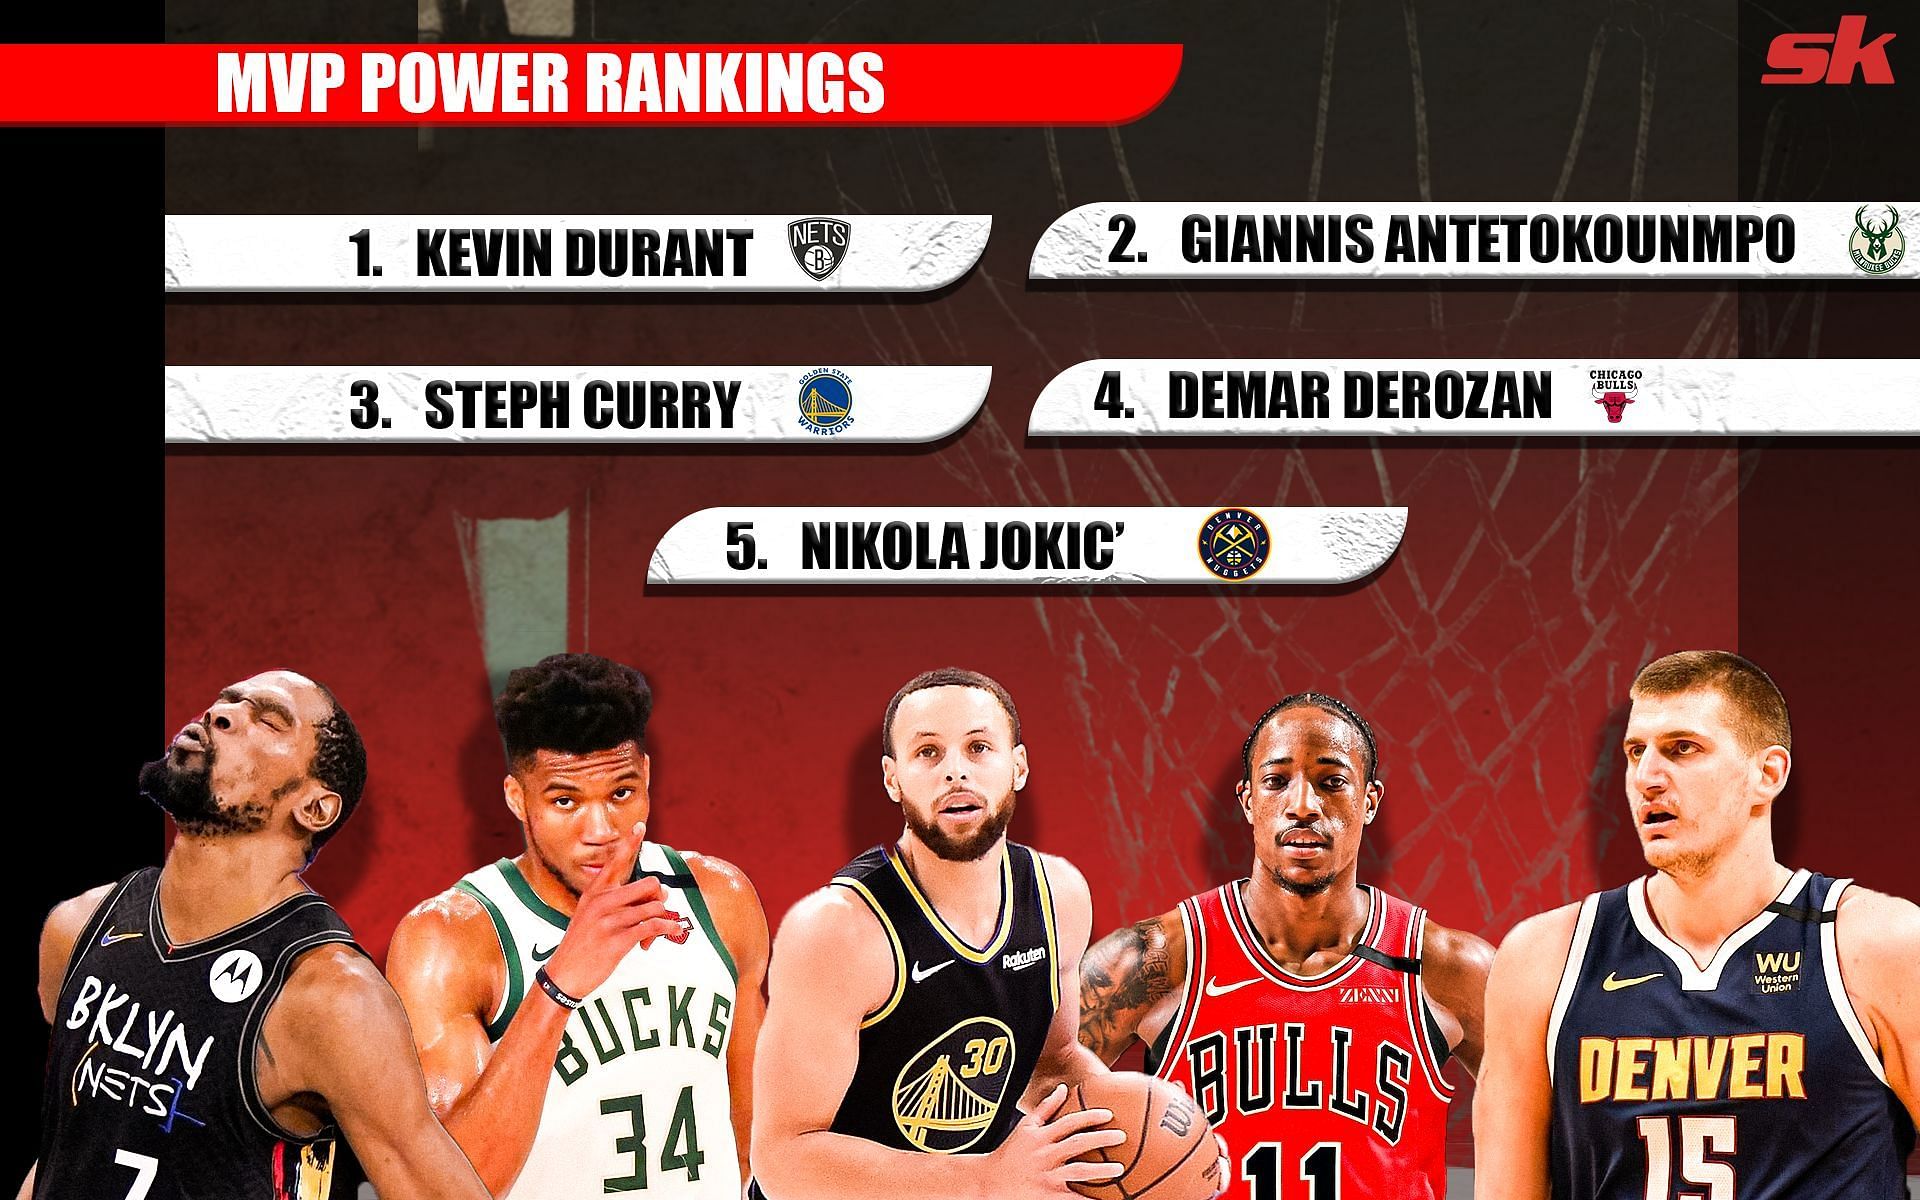 The NBA MVP Power Rankings by Sportskeeda